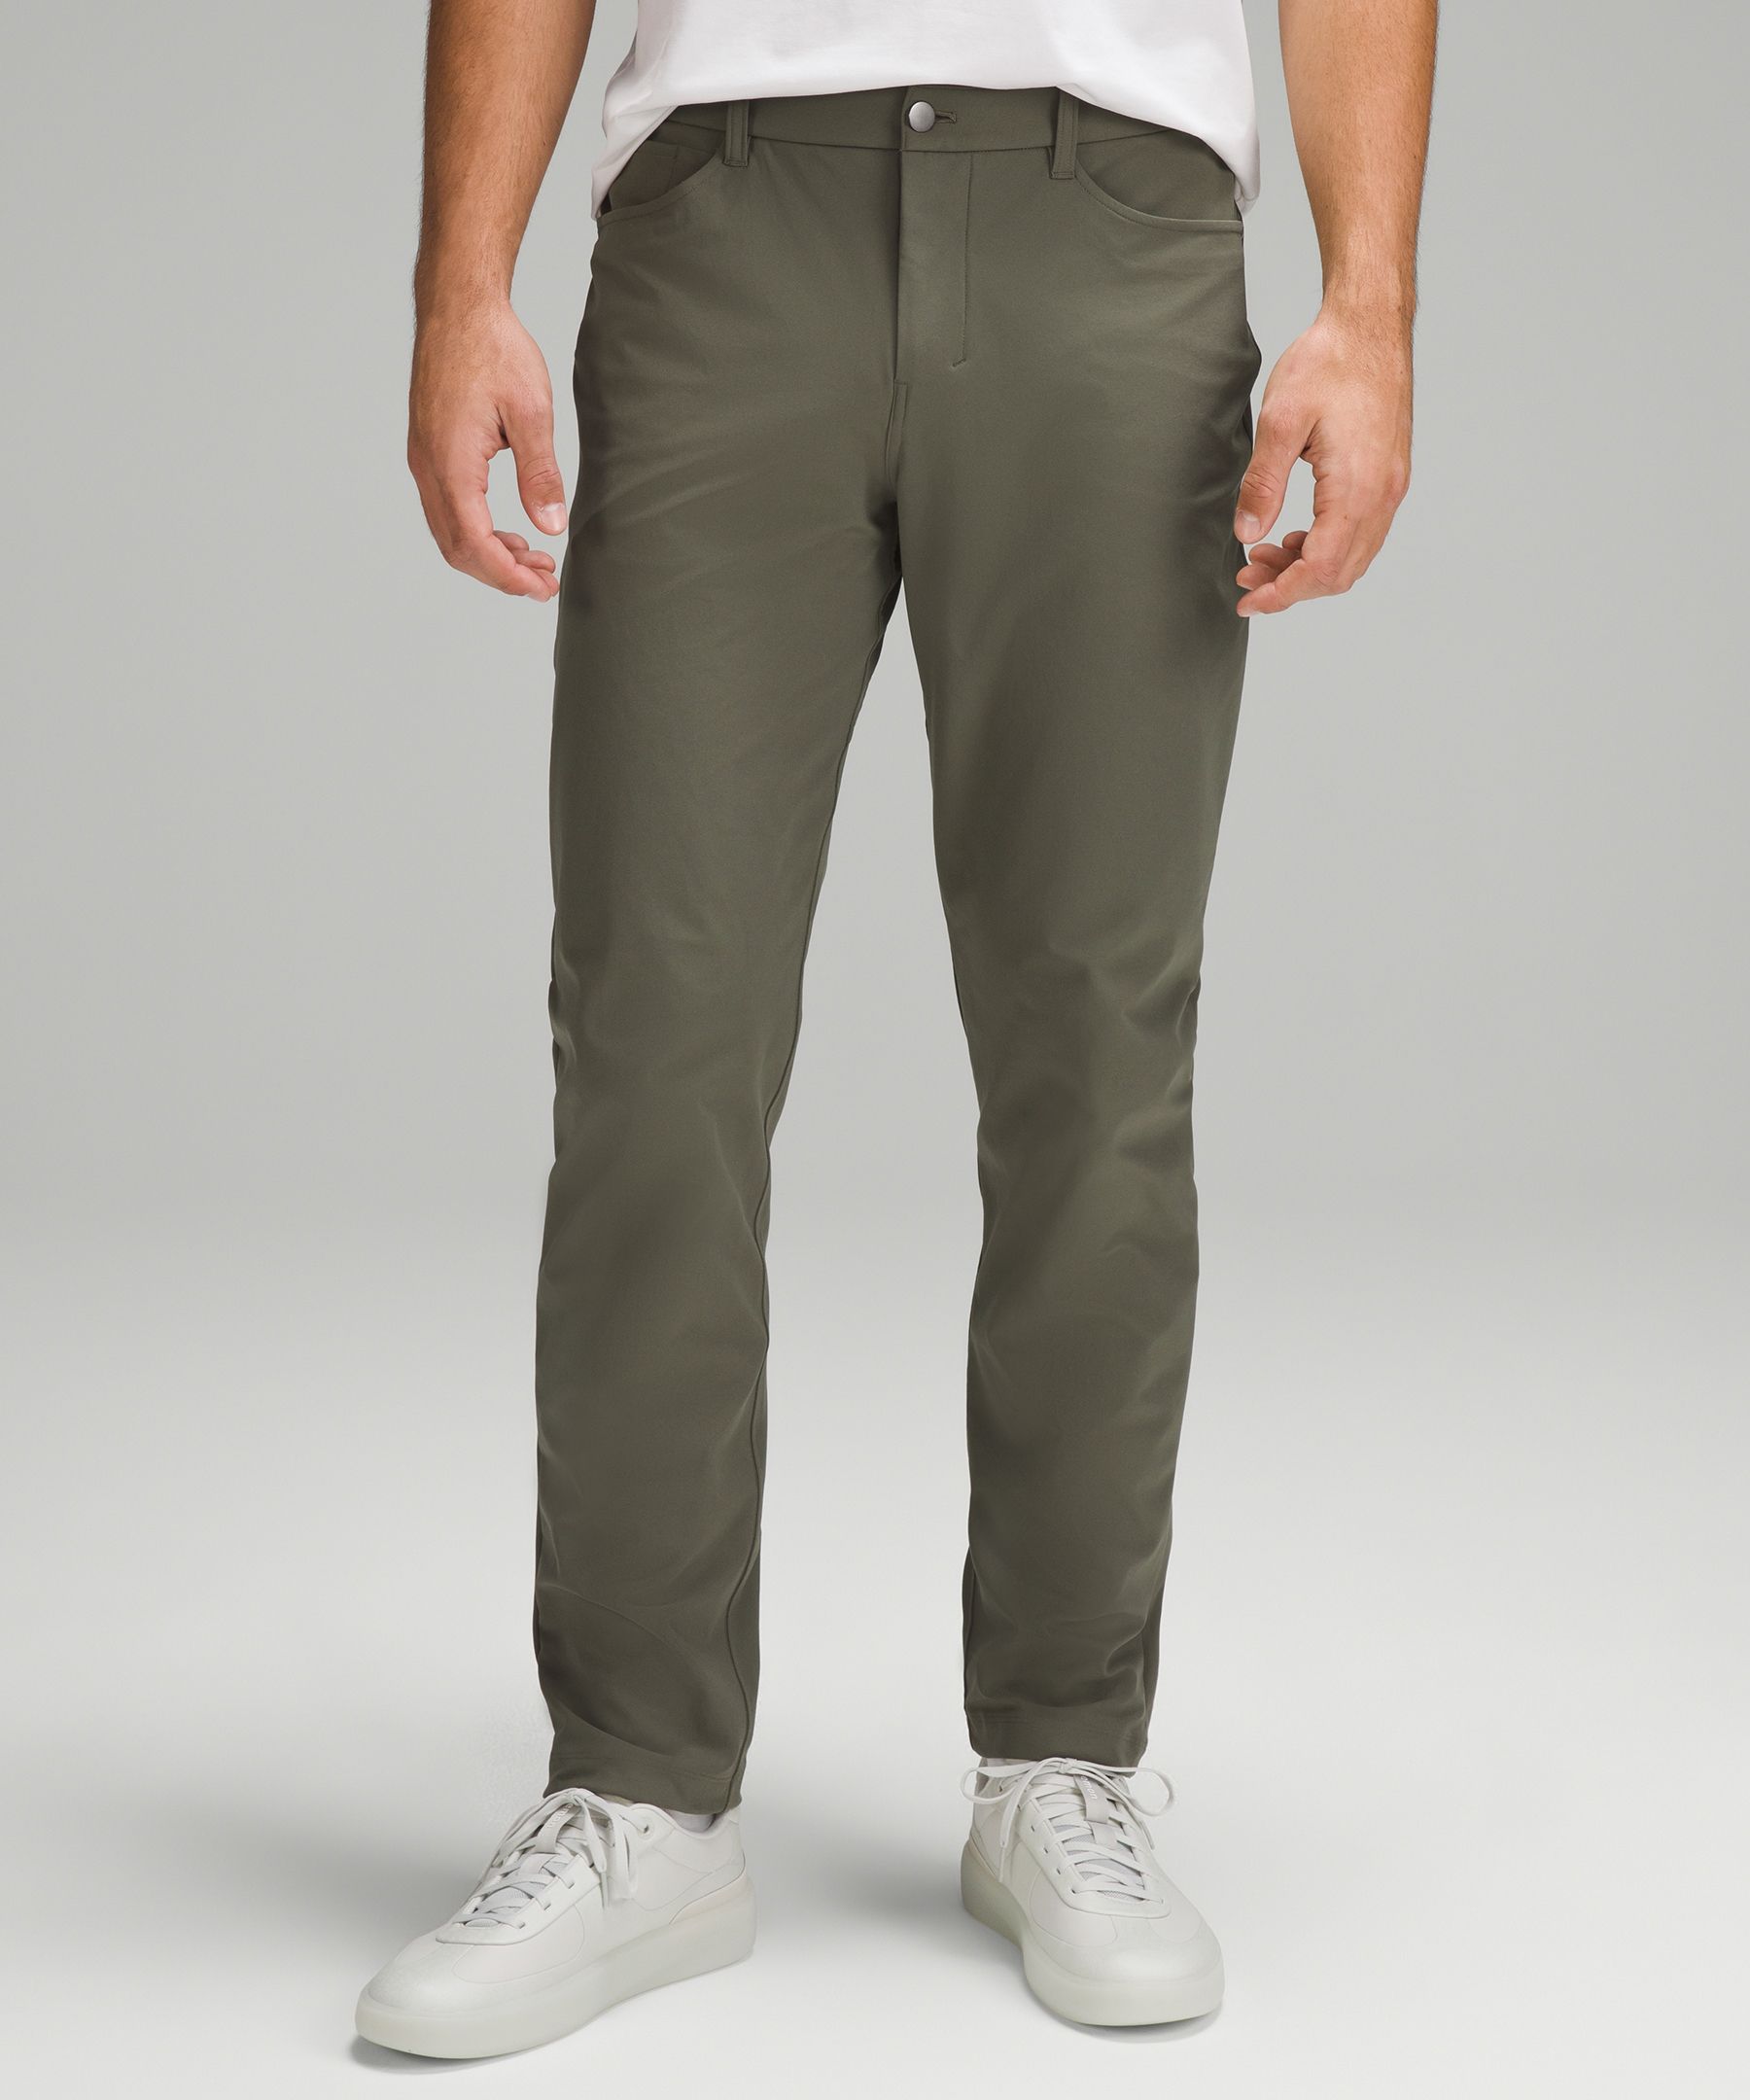 Lululemon athletica ABC Classic-Fit 5 Pocket Pant 32 *Utilitech, Men's  Trousers